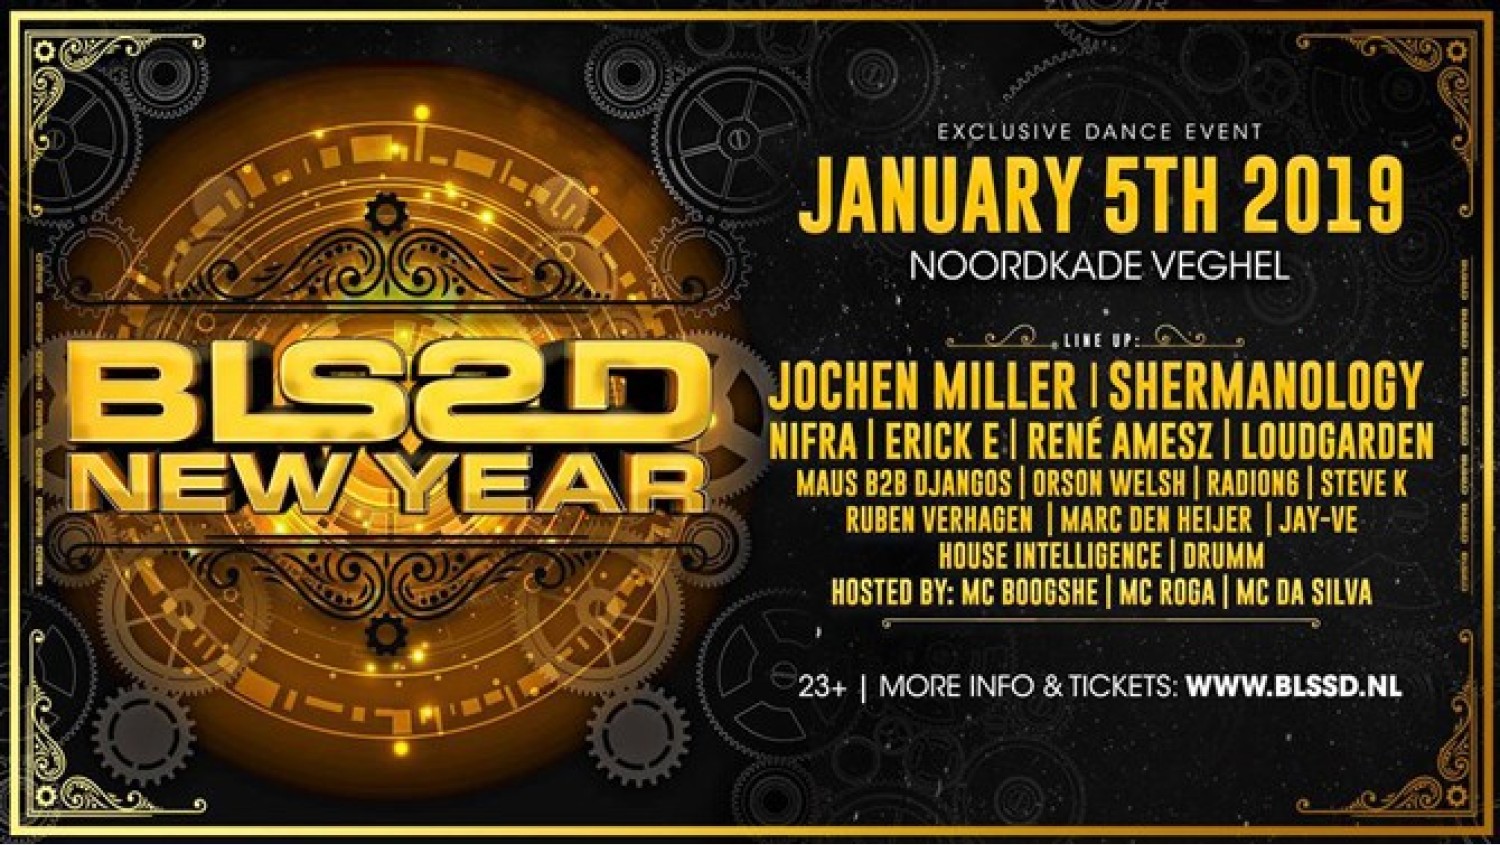 Party nieuws: BLSSD New Year is uitverkocht maar extra tickets!